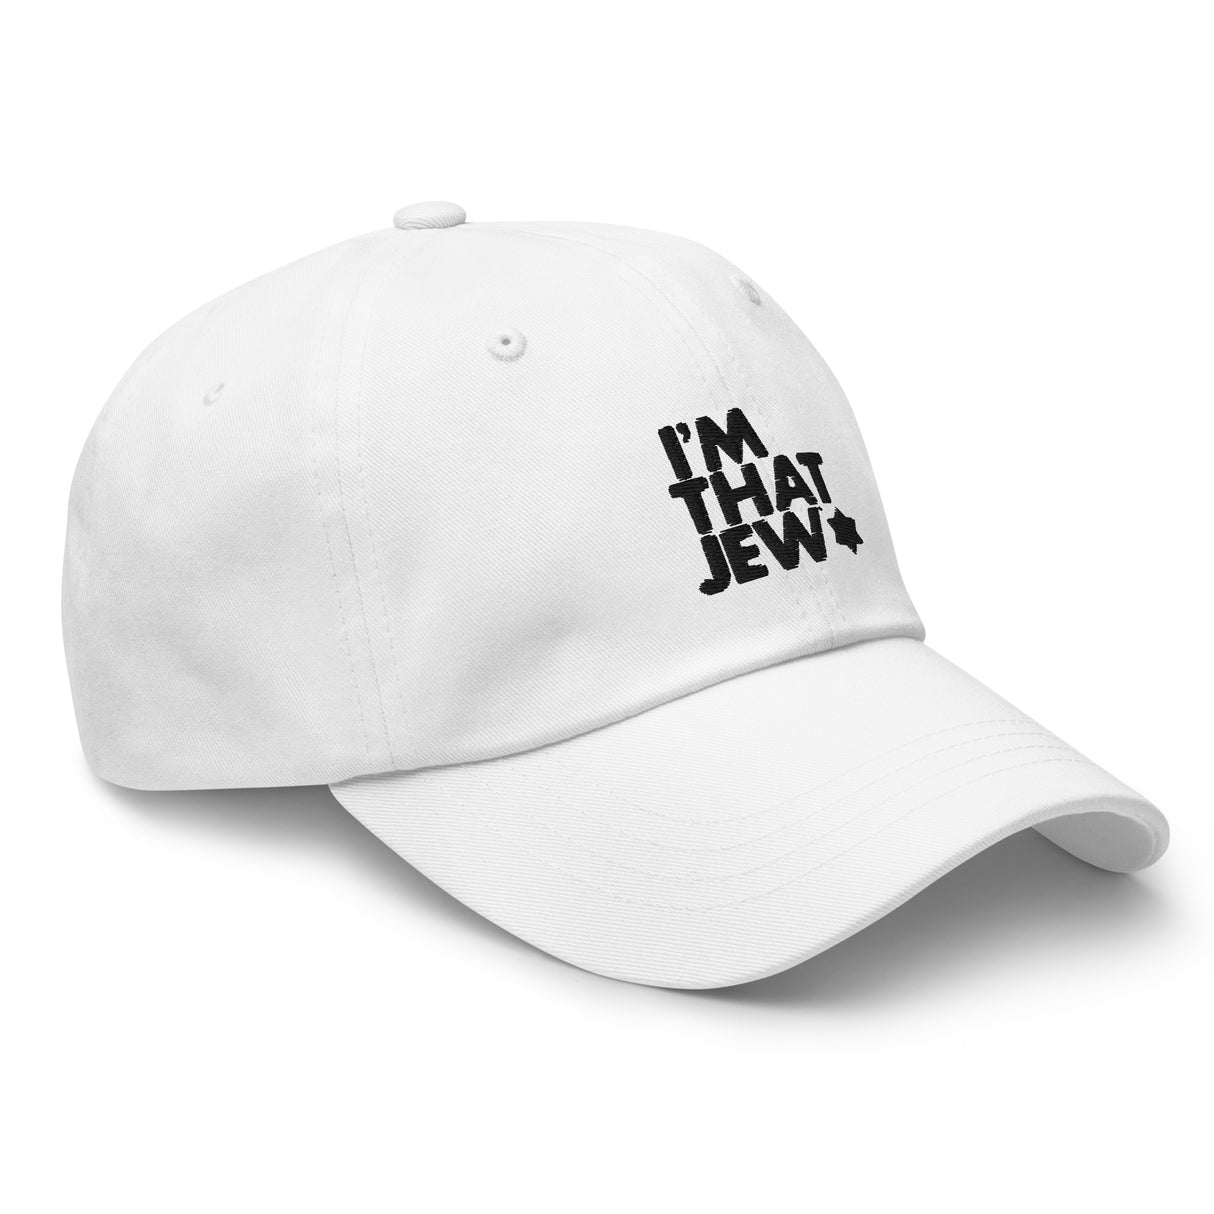 I'm That Jew™ Baseball Cap